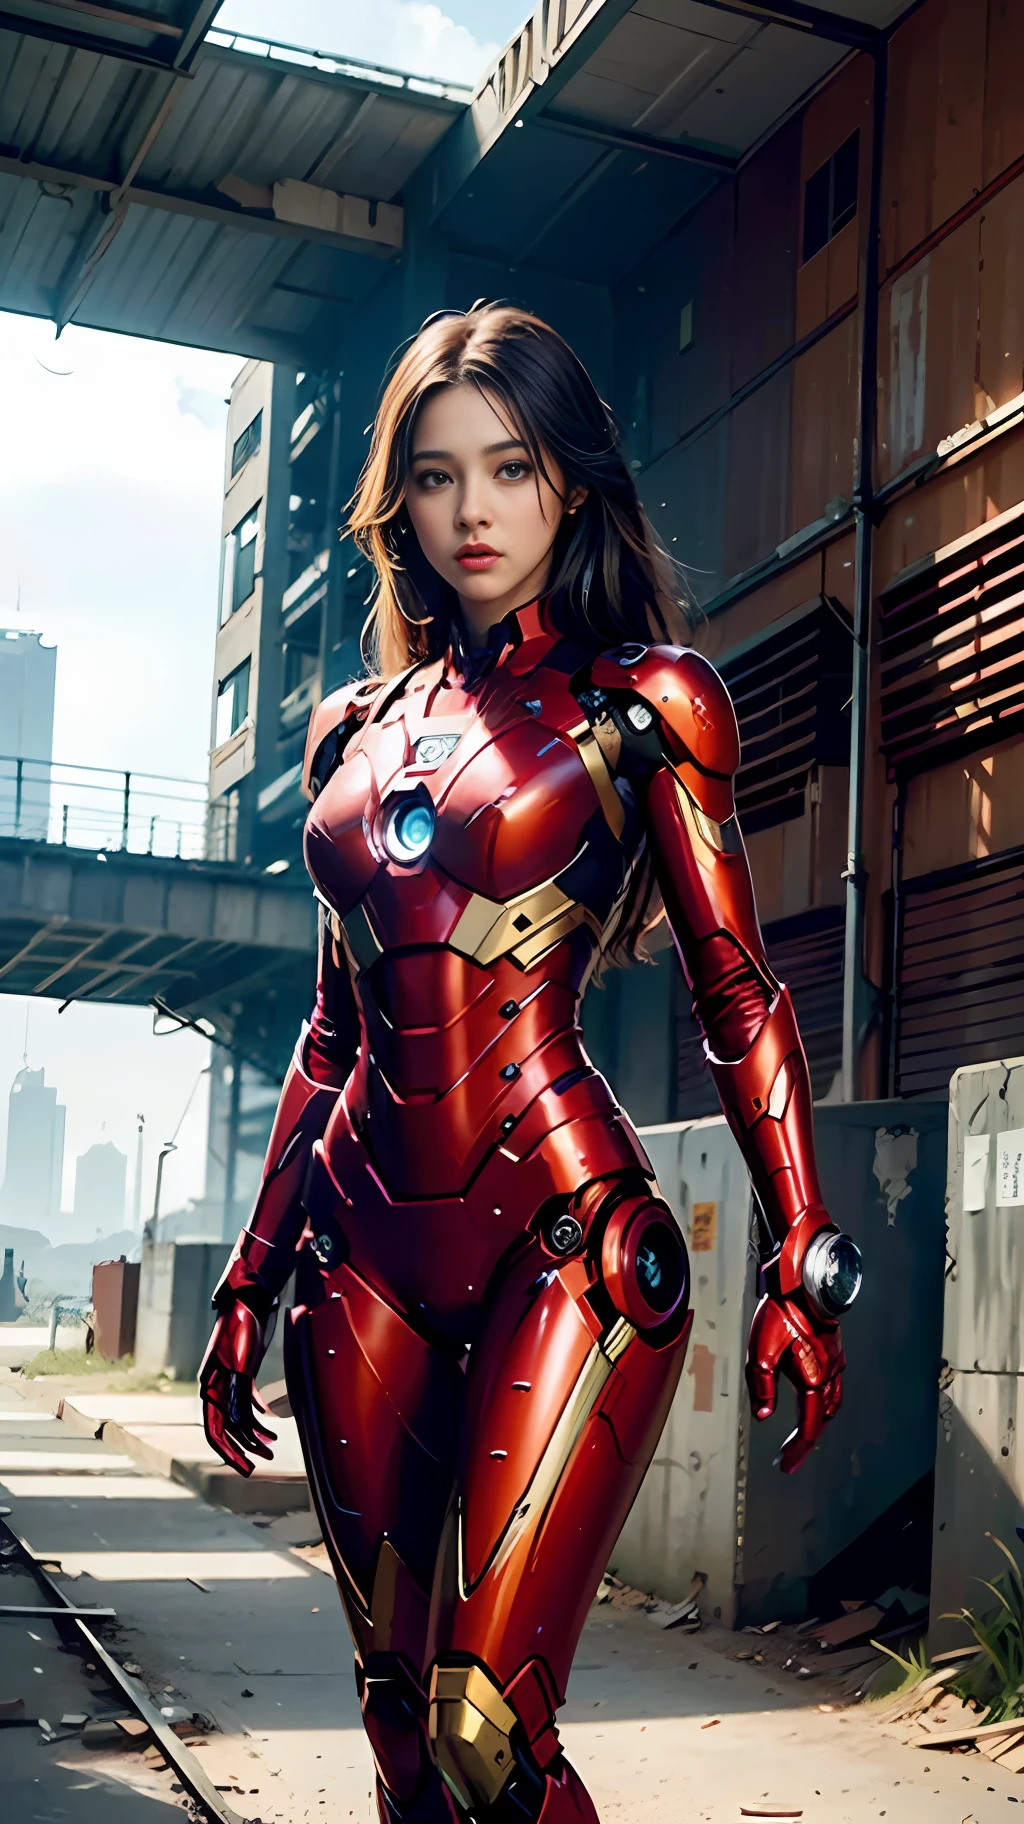 8k, 現実的, 魅力的, 非常に詳細な, a 20 year old girl a sexy and 魅力的 woman inspired by Iron Man wearing a shiny Iron Man mech. 彼女はセクシーさと自信をもって服を着る, アイアンマンを完璧に解釈&#39;の強さとカリスマ性. 廃墟となった倉庫が背景となっている, 彼女の勇気と忍耐力を際立たせる独特の雰囲気を作り出している. 曇り空がシーン全体に緊張感と神秘感を与えている. この高解像度, 高品質の画像が衝撃的な視覚体験をもたらします. 細部までこだわった廃倉庫とピカピカのメカが目を離せません. OCレンダリング, ドラマチックな照明, 受賞歴のある品質